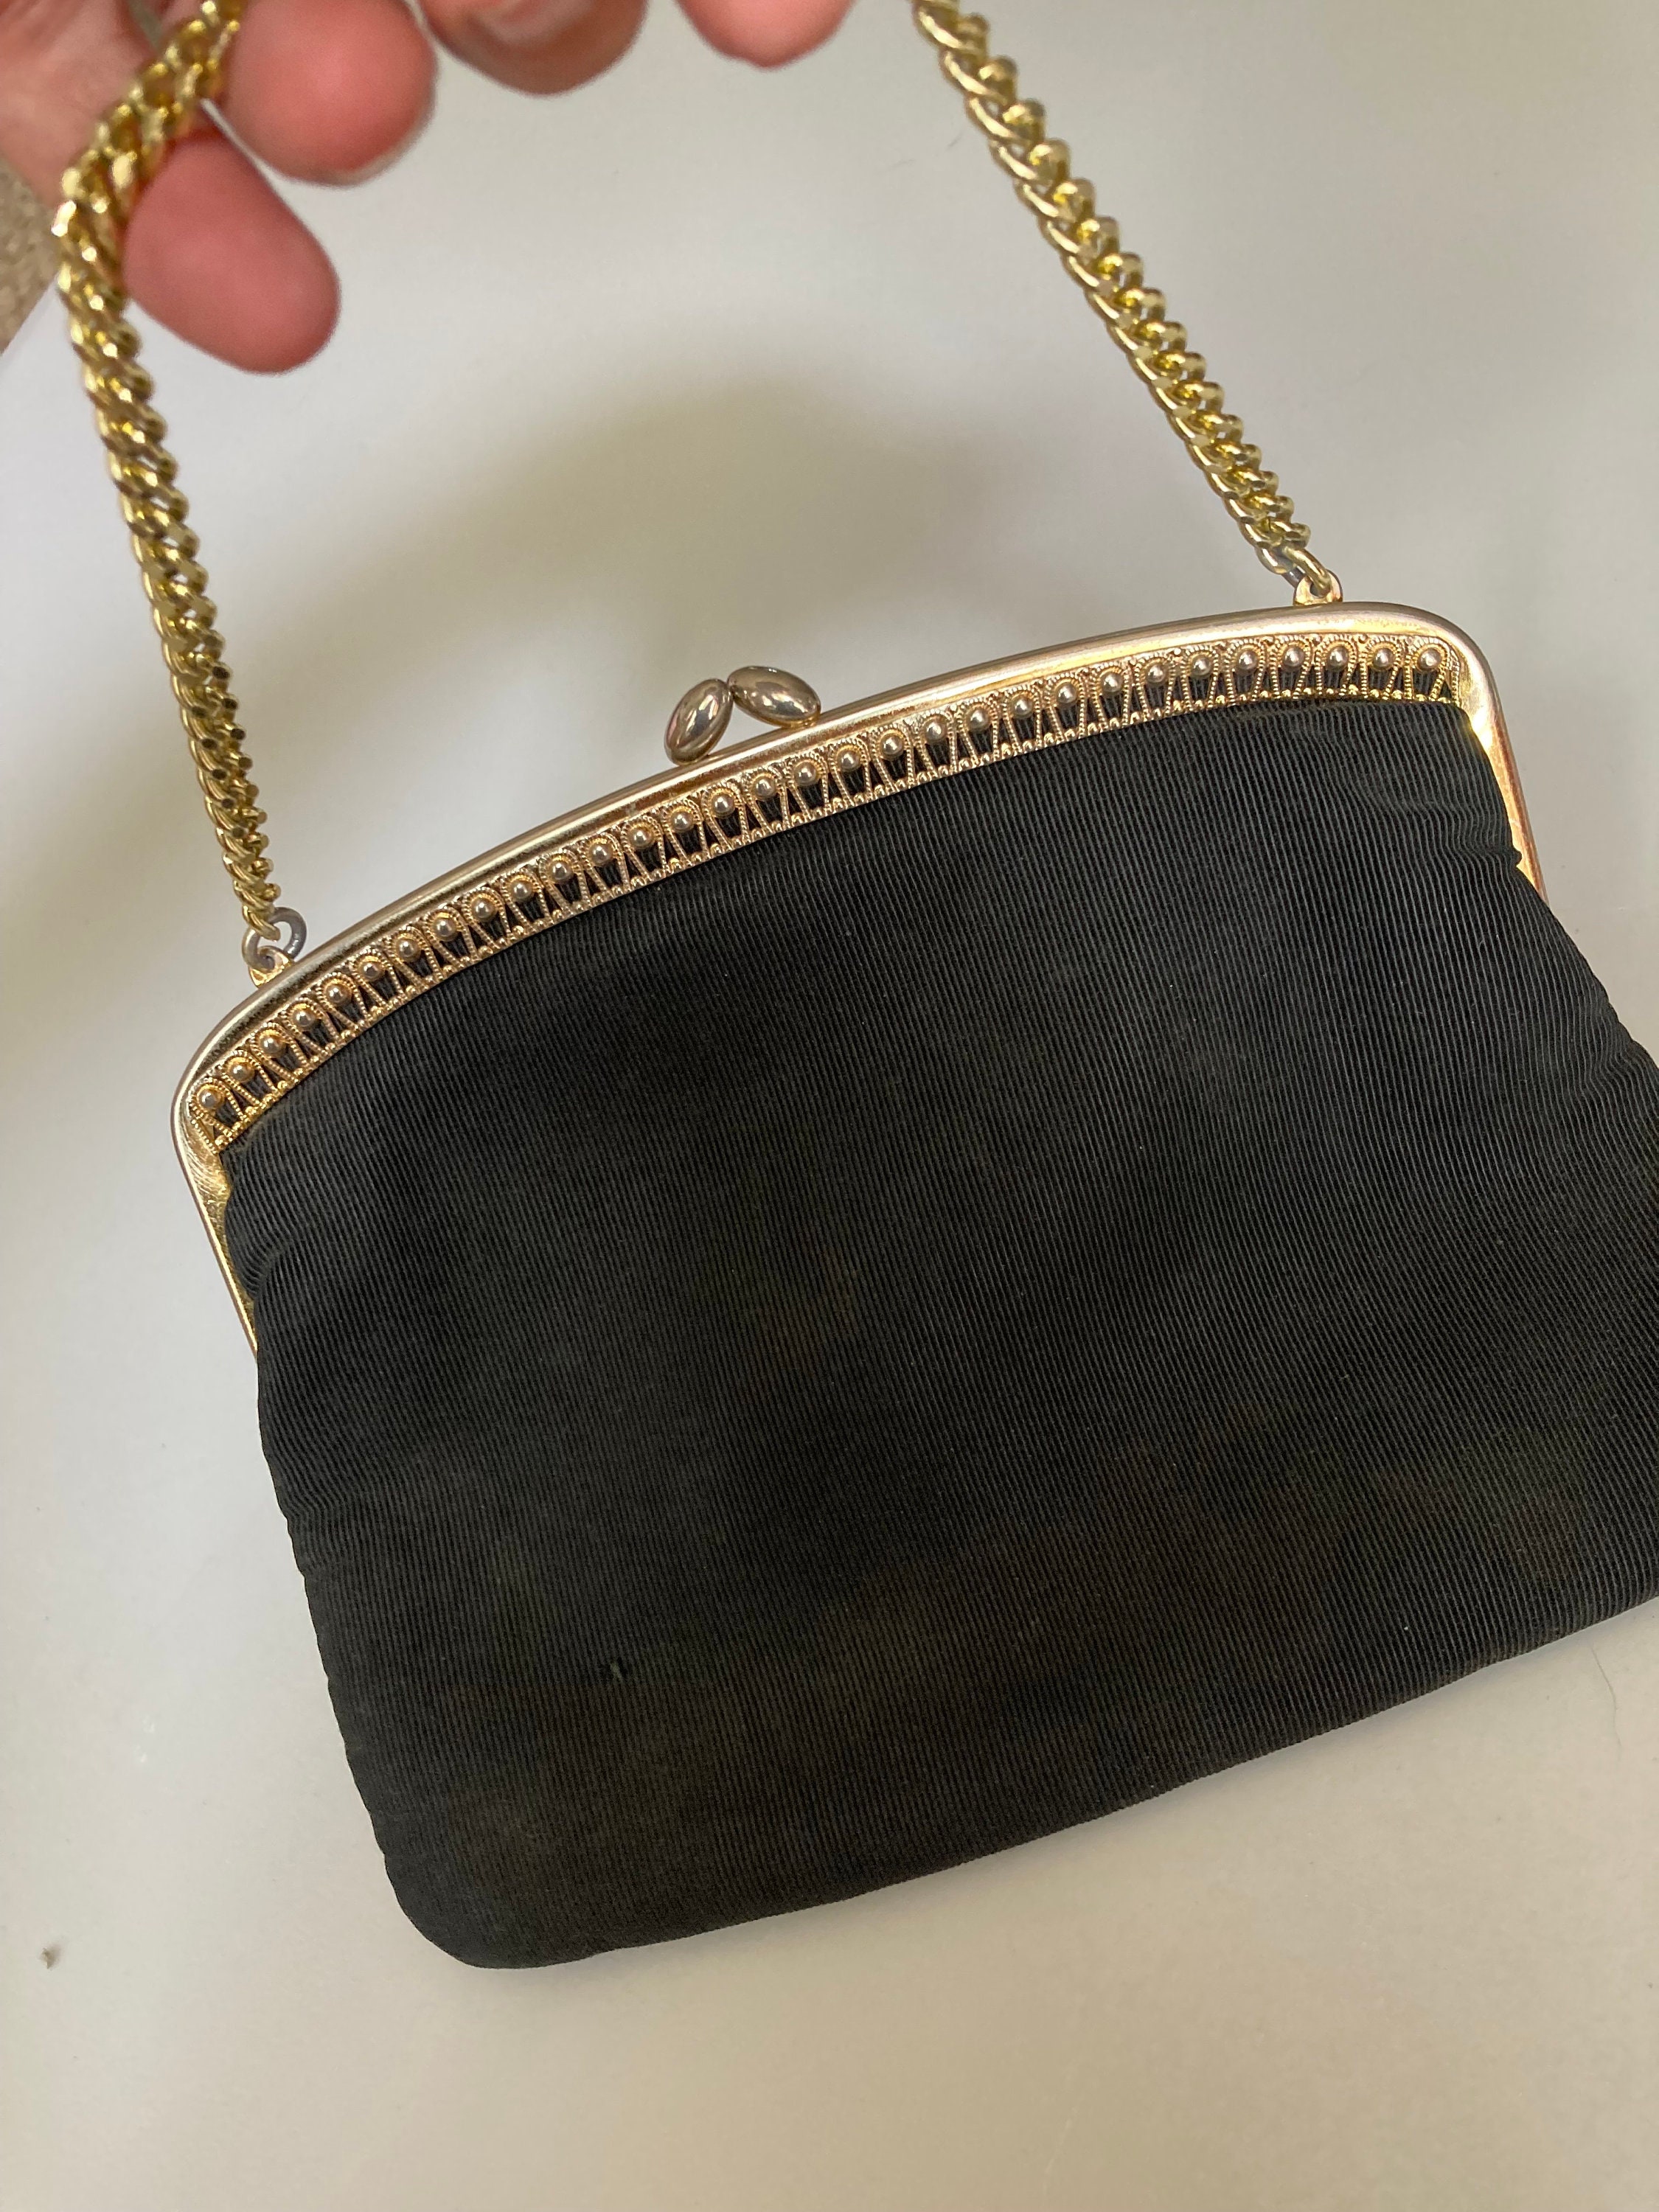 Gold Evening Bag Made in France 1950's Vintage Bag 